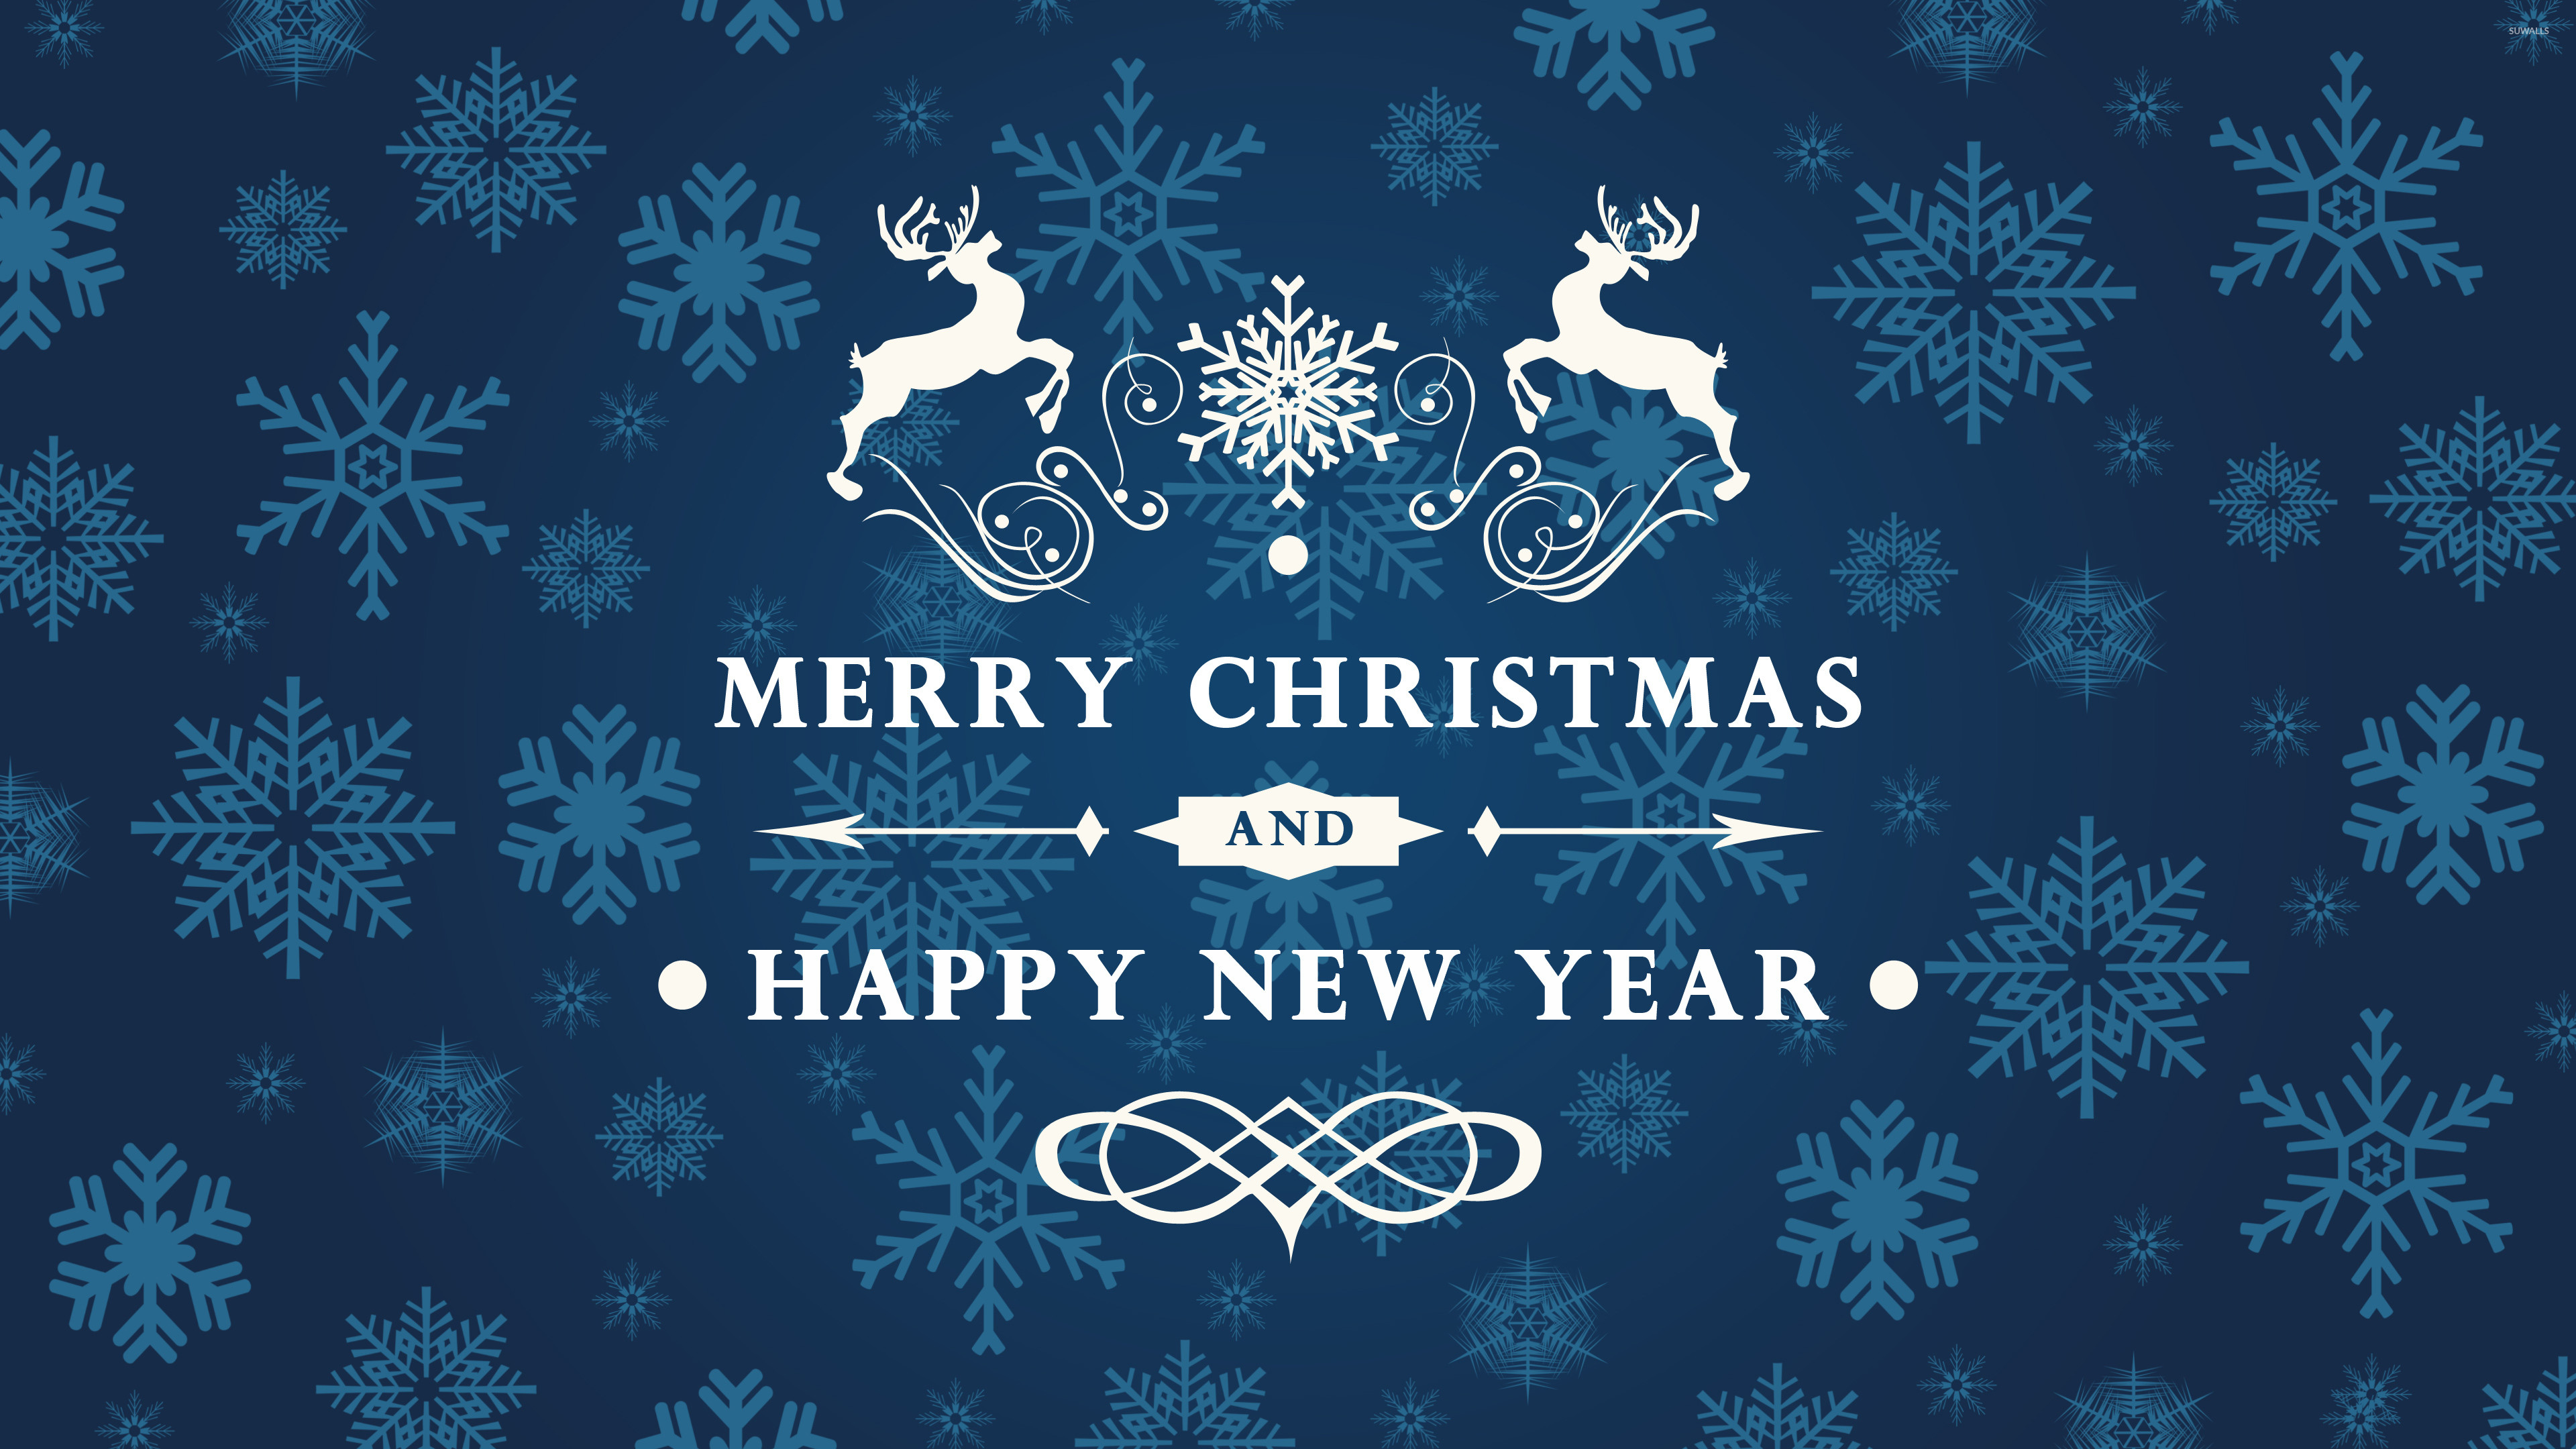 3840x2160 Reindeer wishing you Merry Christmas wallpaper